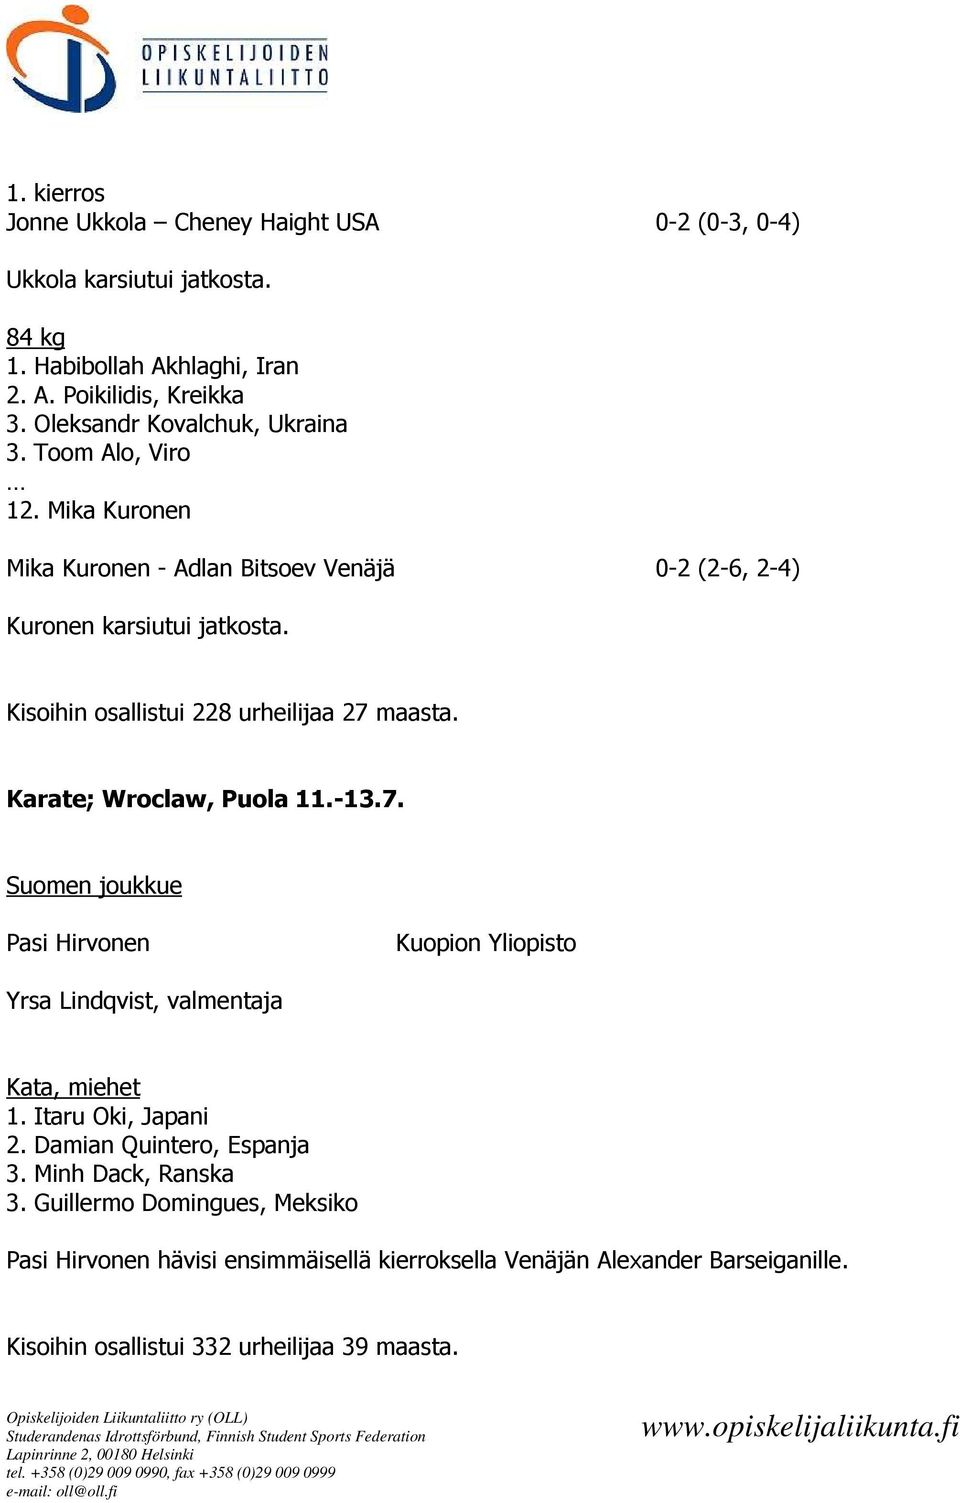 Kisoihin osallistui 228 urheilijaa 27 maasta. Karate; Wroclaw, Puola 11.-13.7. Pasi Hirvonen Kuopion Yliopisto Yrsa Lindqvist, valmentaja Kata, miehet 1.